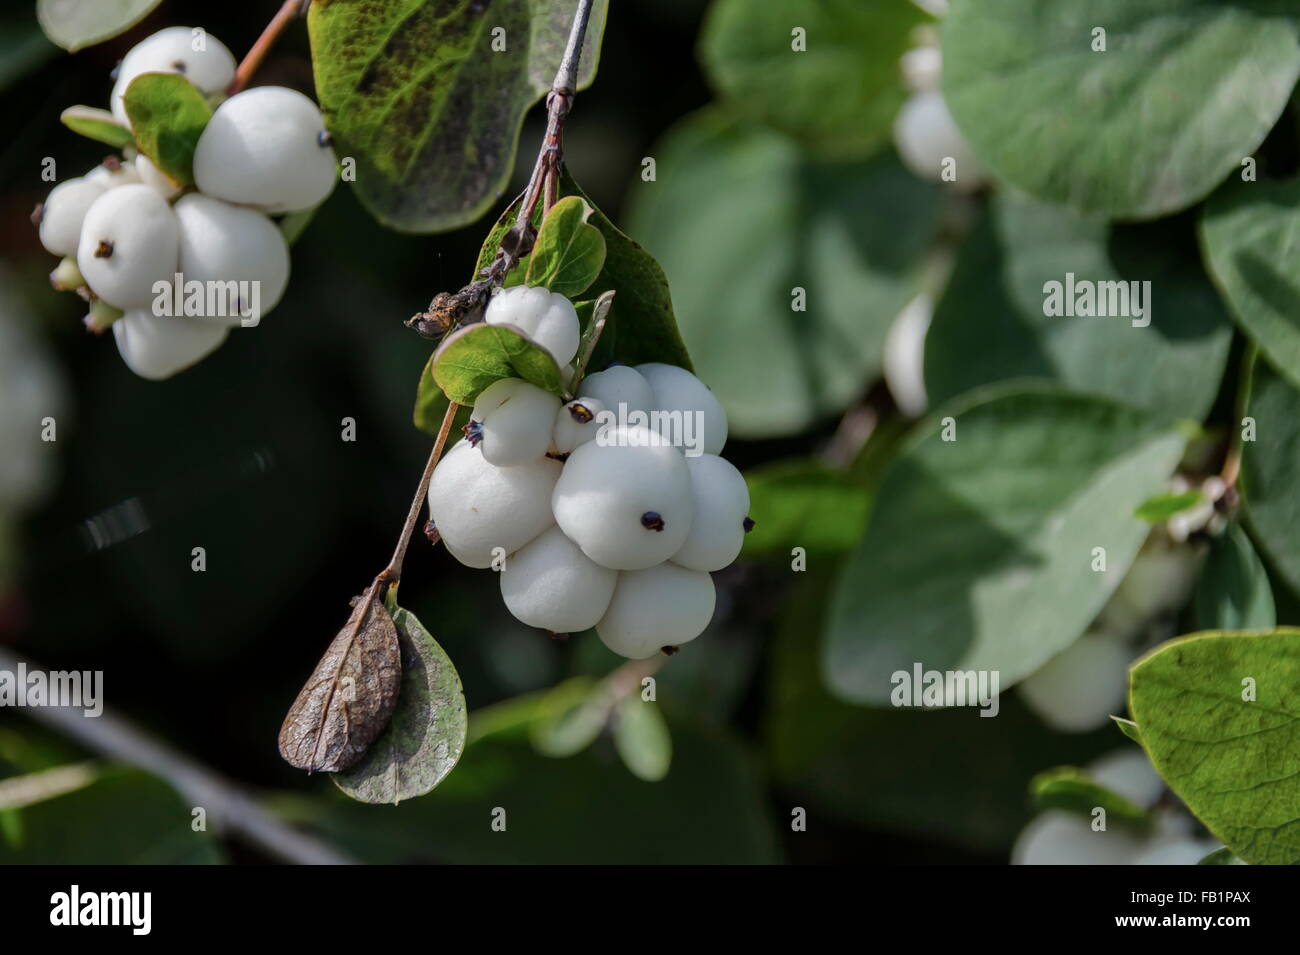 Snowberry albus arbusto nel parco, Pancharevo, Bulgaria Foto Stock